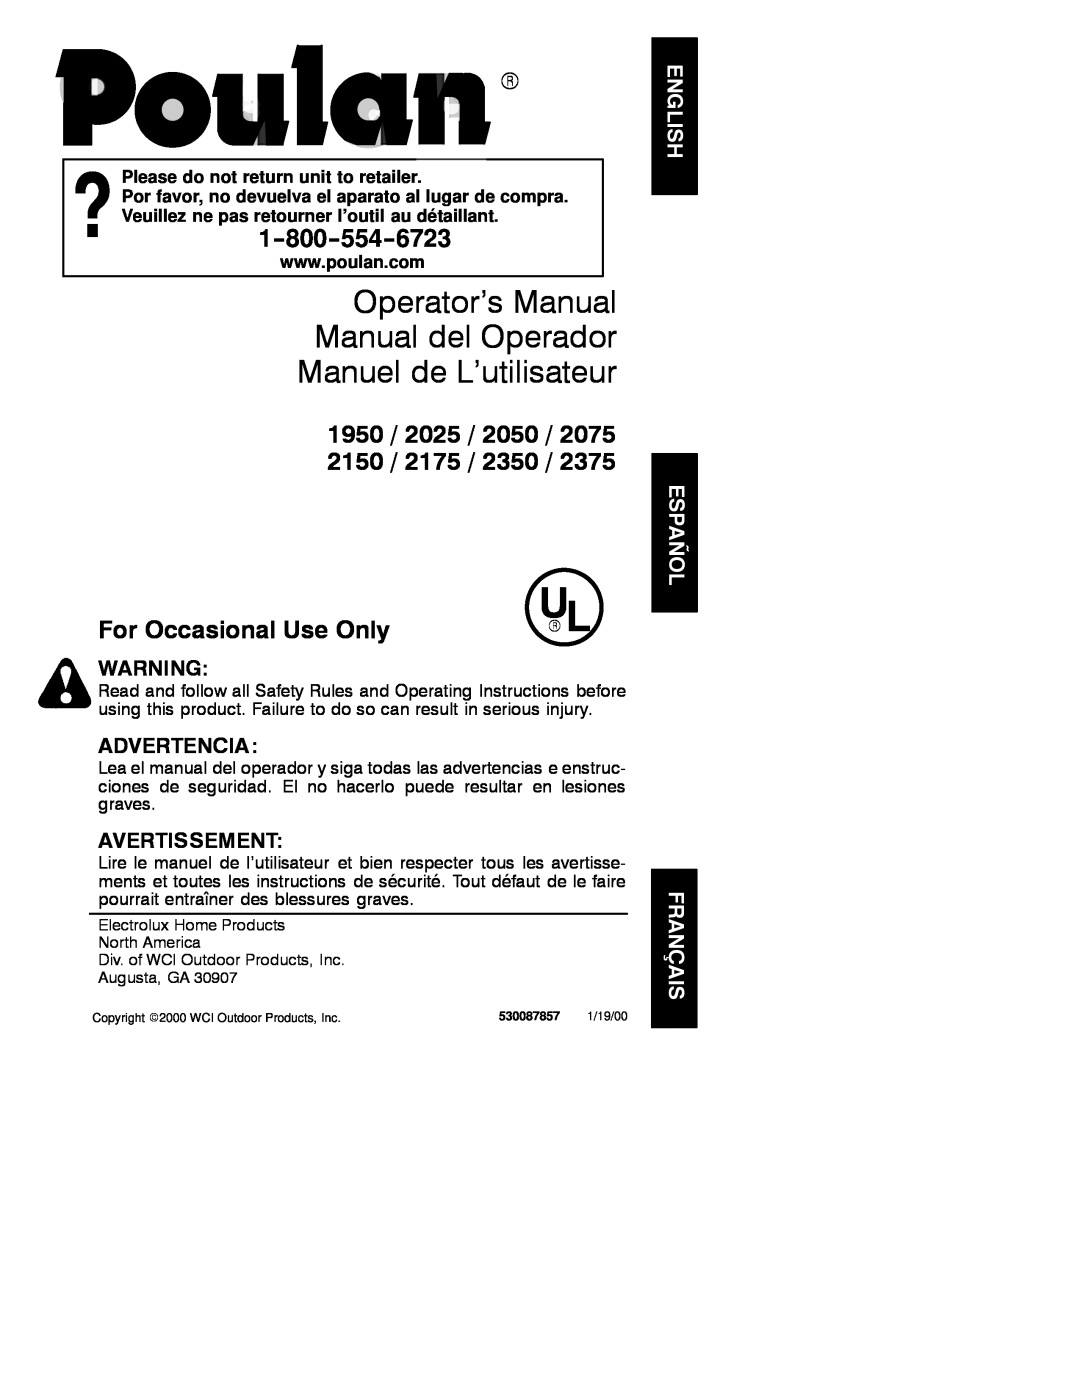 Poulan 530087857 manual Operator’s Manual Manual del Operador, Manuel de L’utilisateur, 1950 / 2025 / 2050 / 2150 